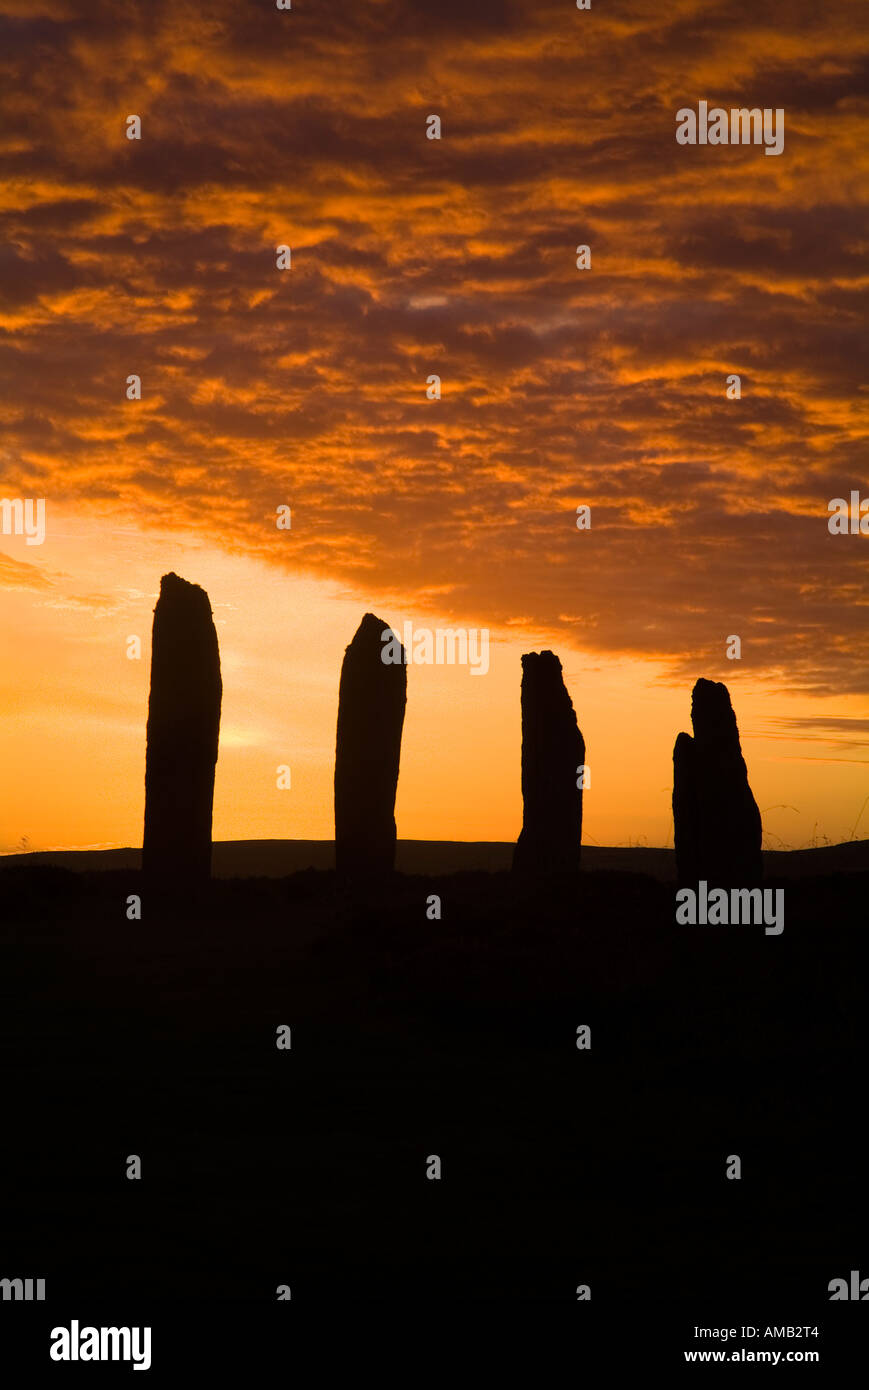 anello dh DI BRODGAR ORKNEY Scozia pietre neolitiche in piedi arancione e grigio tramonto nuvoloso crepuscolo cielo patrimonio dell'umanità sito antico megalito brogar Foto Stock